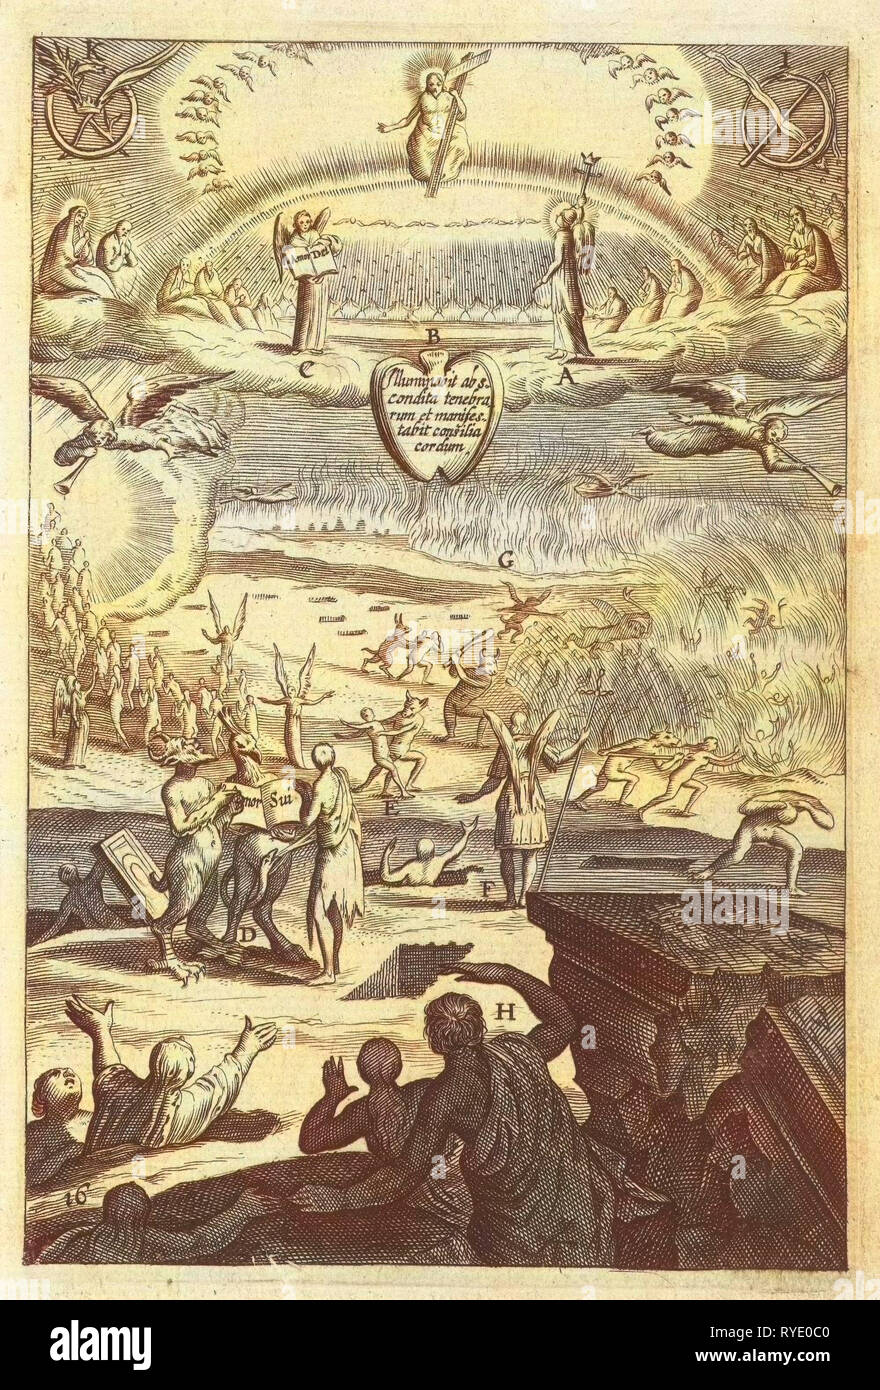 Emblema con la sentenza definitiva per la considerazione della vita in virtù o peccato, Boëtius Adamsz. Bolswert, anonimo, Hendrik Aertssens, 1620 - 1623 Foto Stock